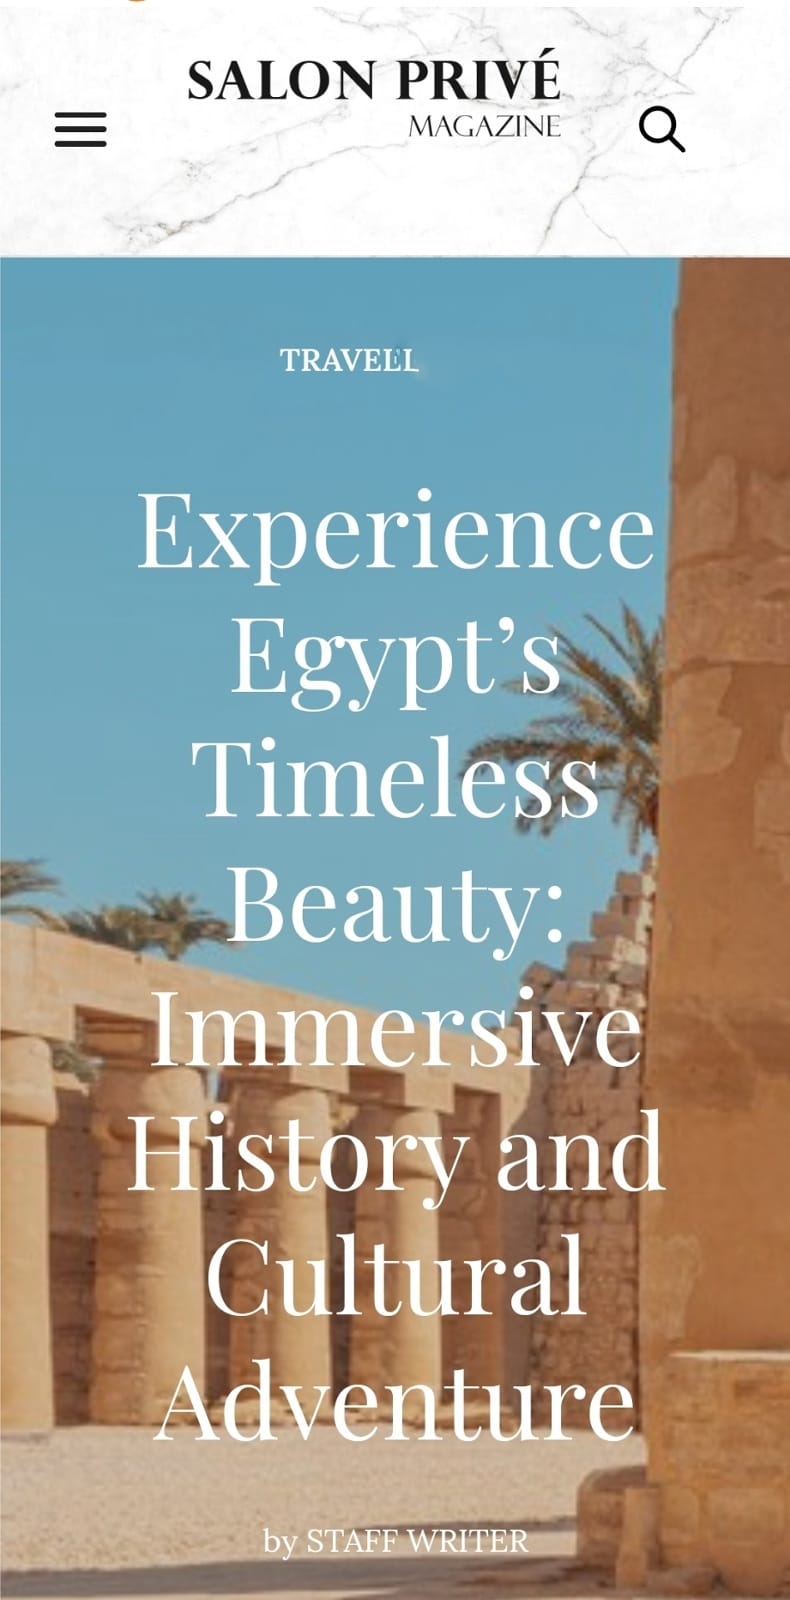 موقع مجلة Salon Privé يبرز المقومات السياحية والأثرية بعدد من أهم المقاصد المصرية